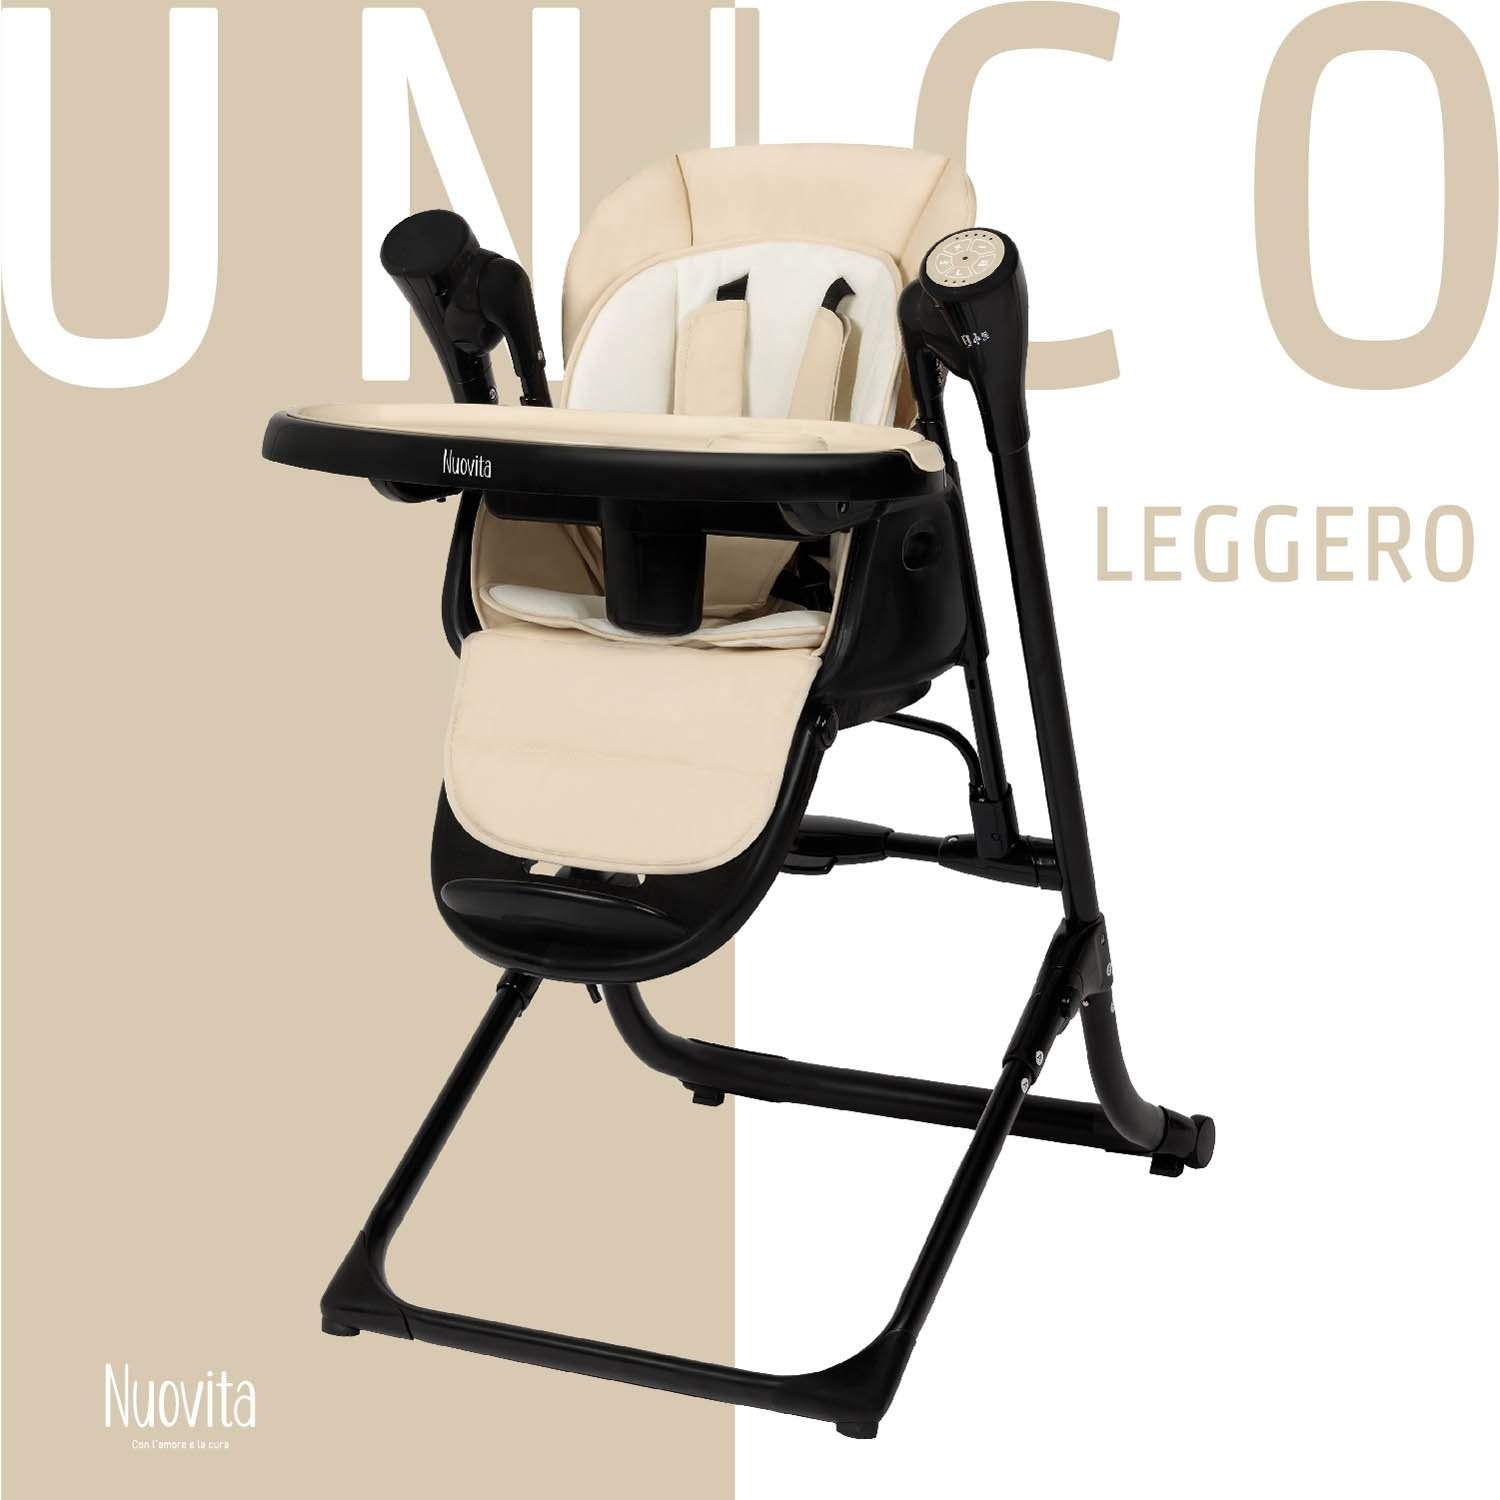 Стульчик для кормления с электронной функцией качения Nuovita Unico Leggero Nero латте